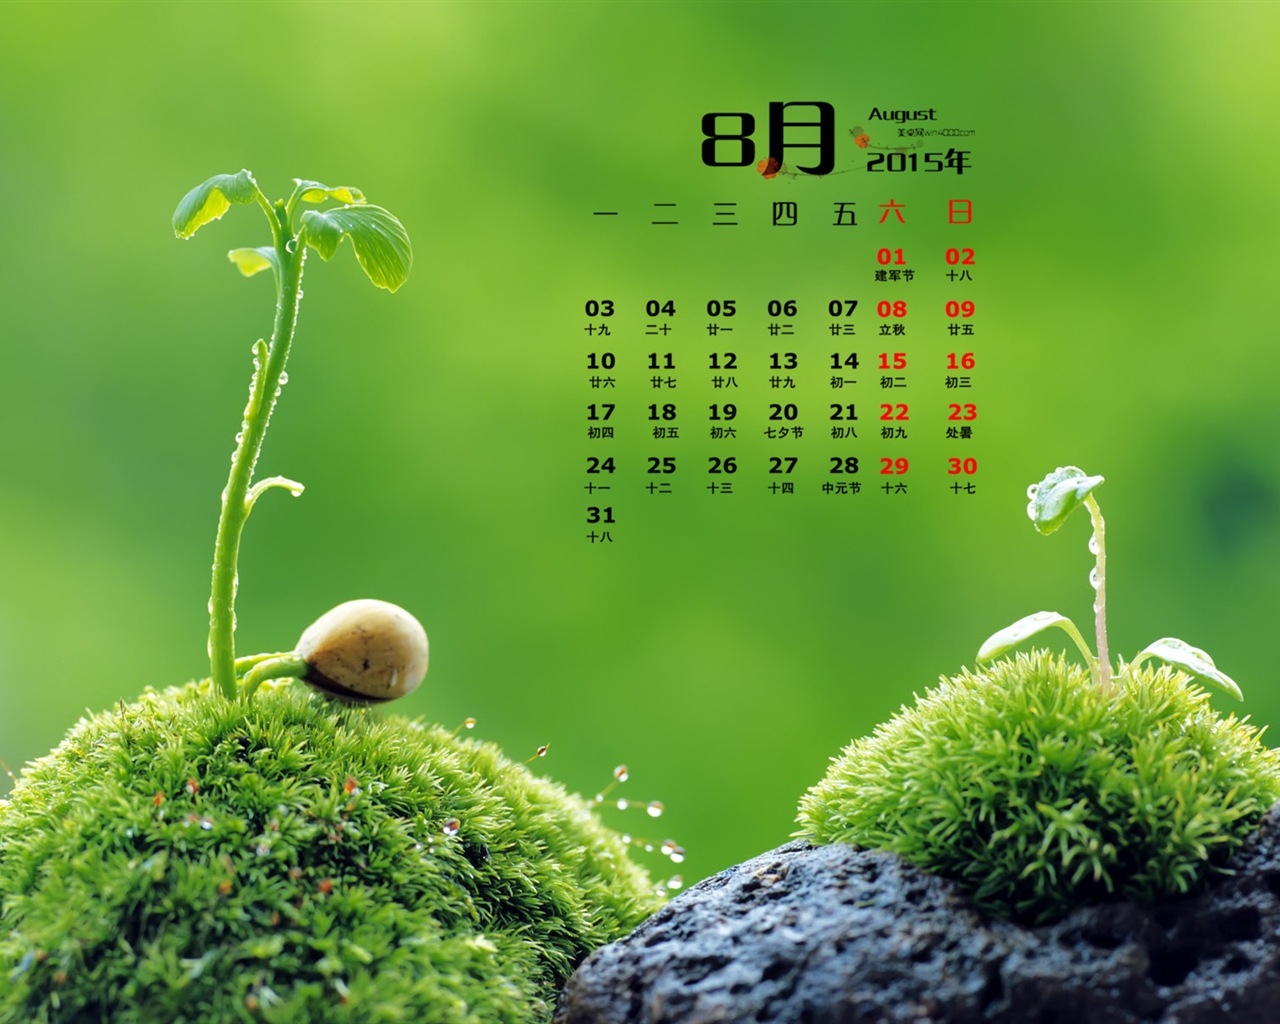 August 2015 calendar wallpaper (1) #16 - 1280x1024